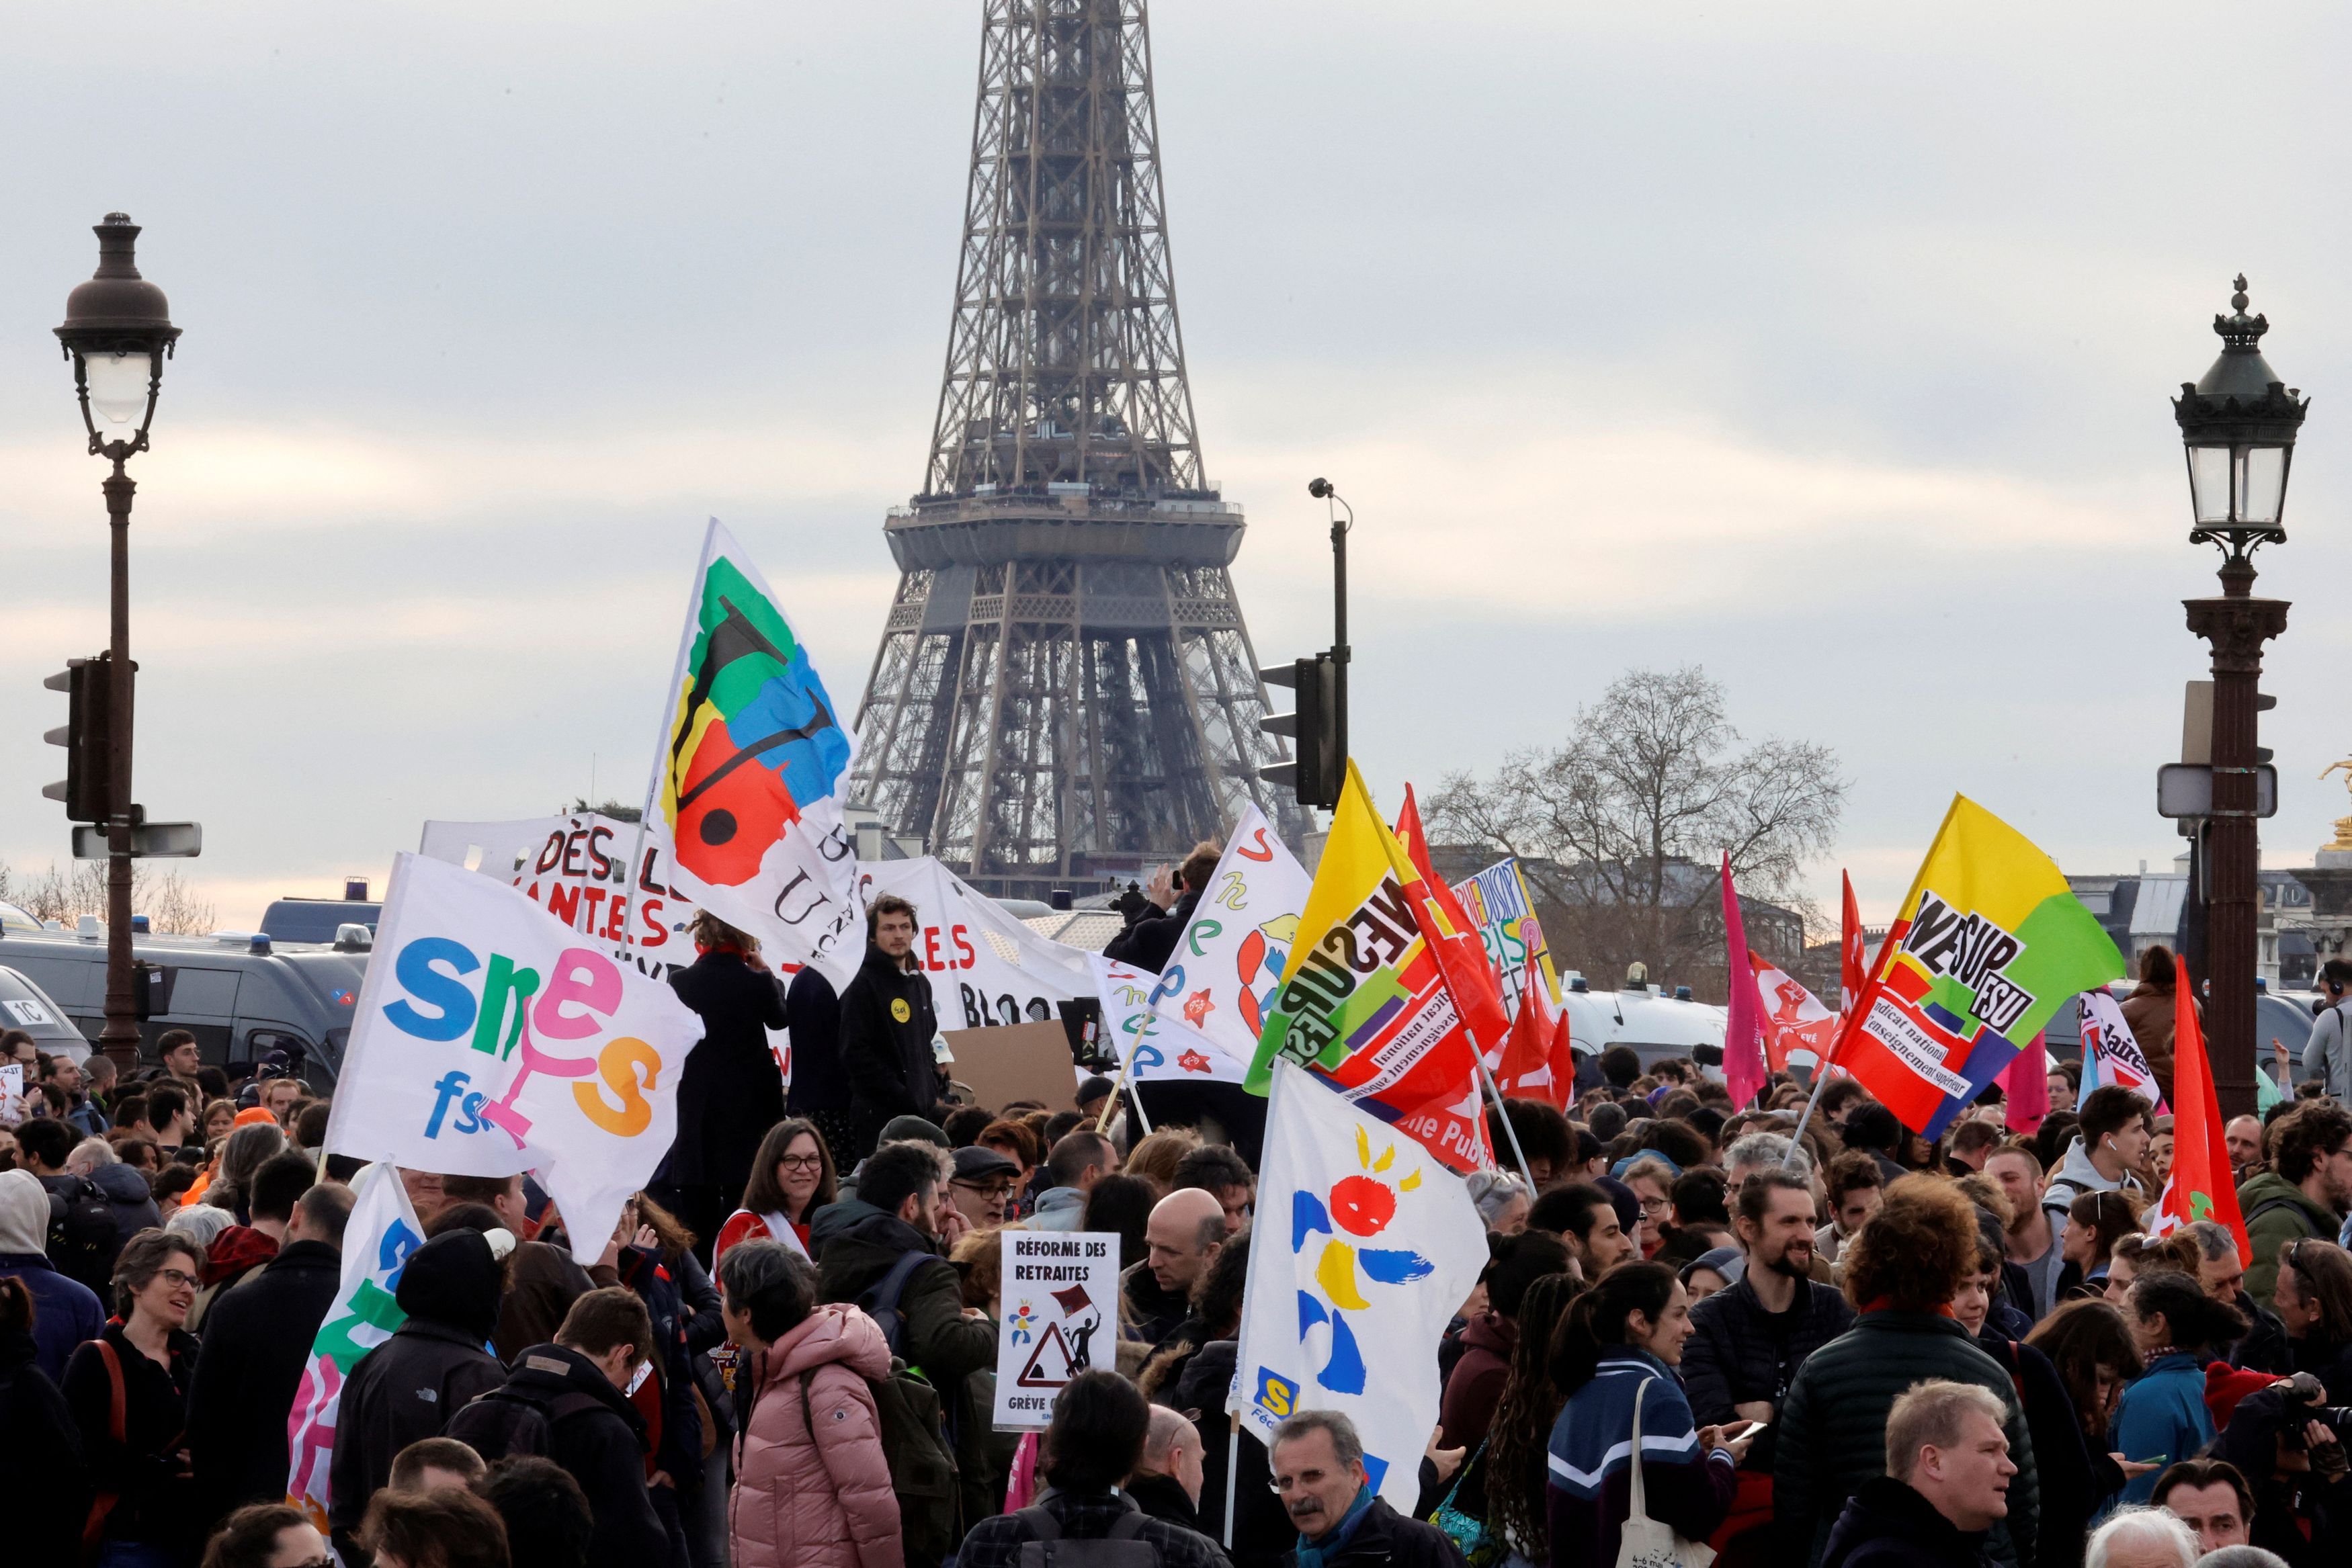 Γαλλία: Το 74% διαφωνεί με το προεδρικό διάταγμα του Μακρόν για το συνταξιοδοτικό